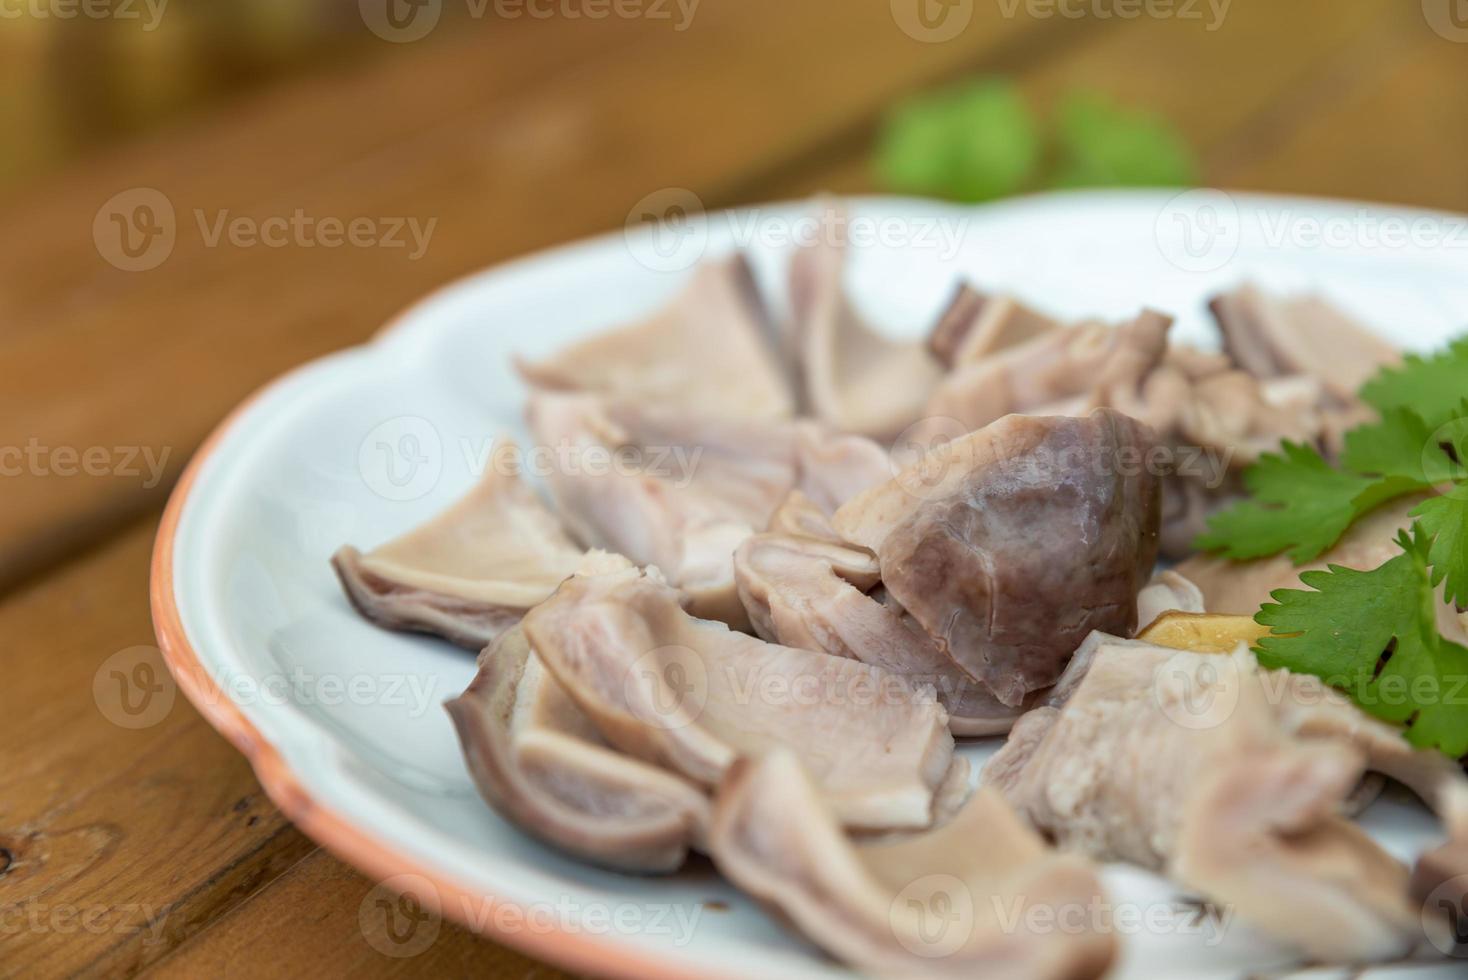 traditionelle leckere chinesische frittierte gerichte foto